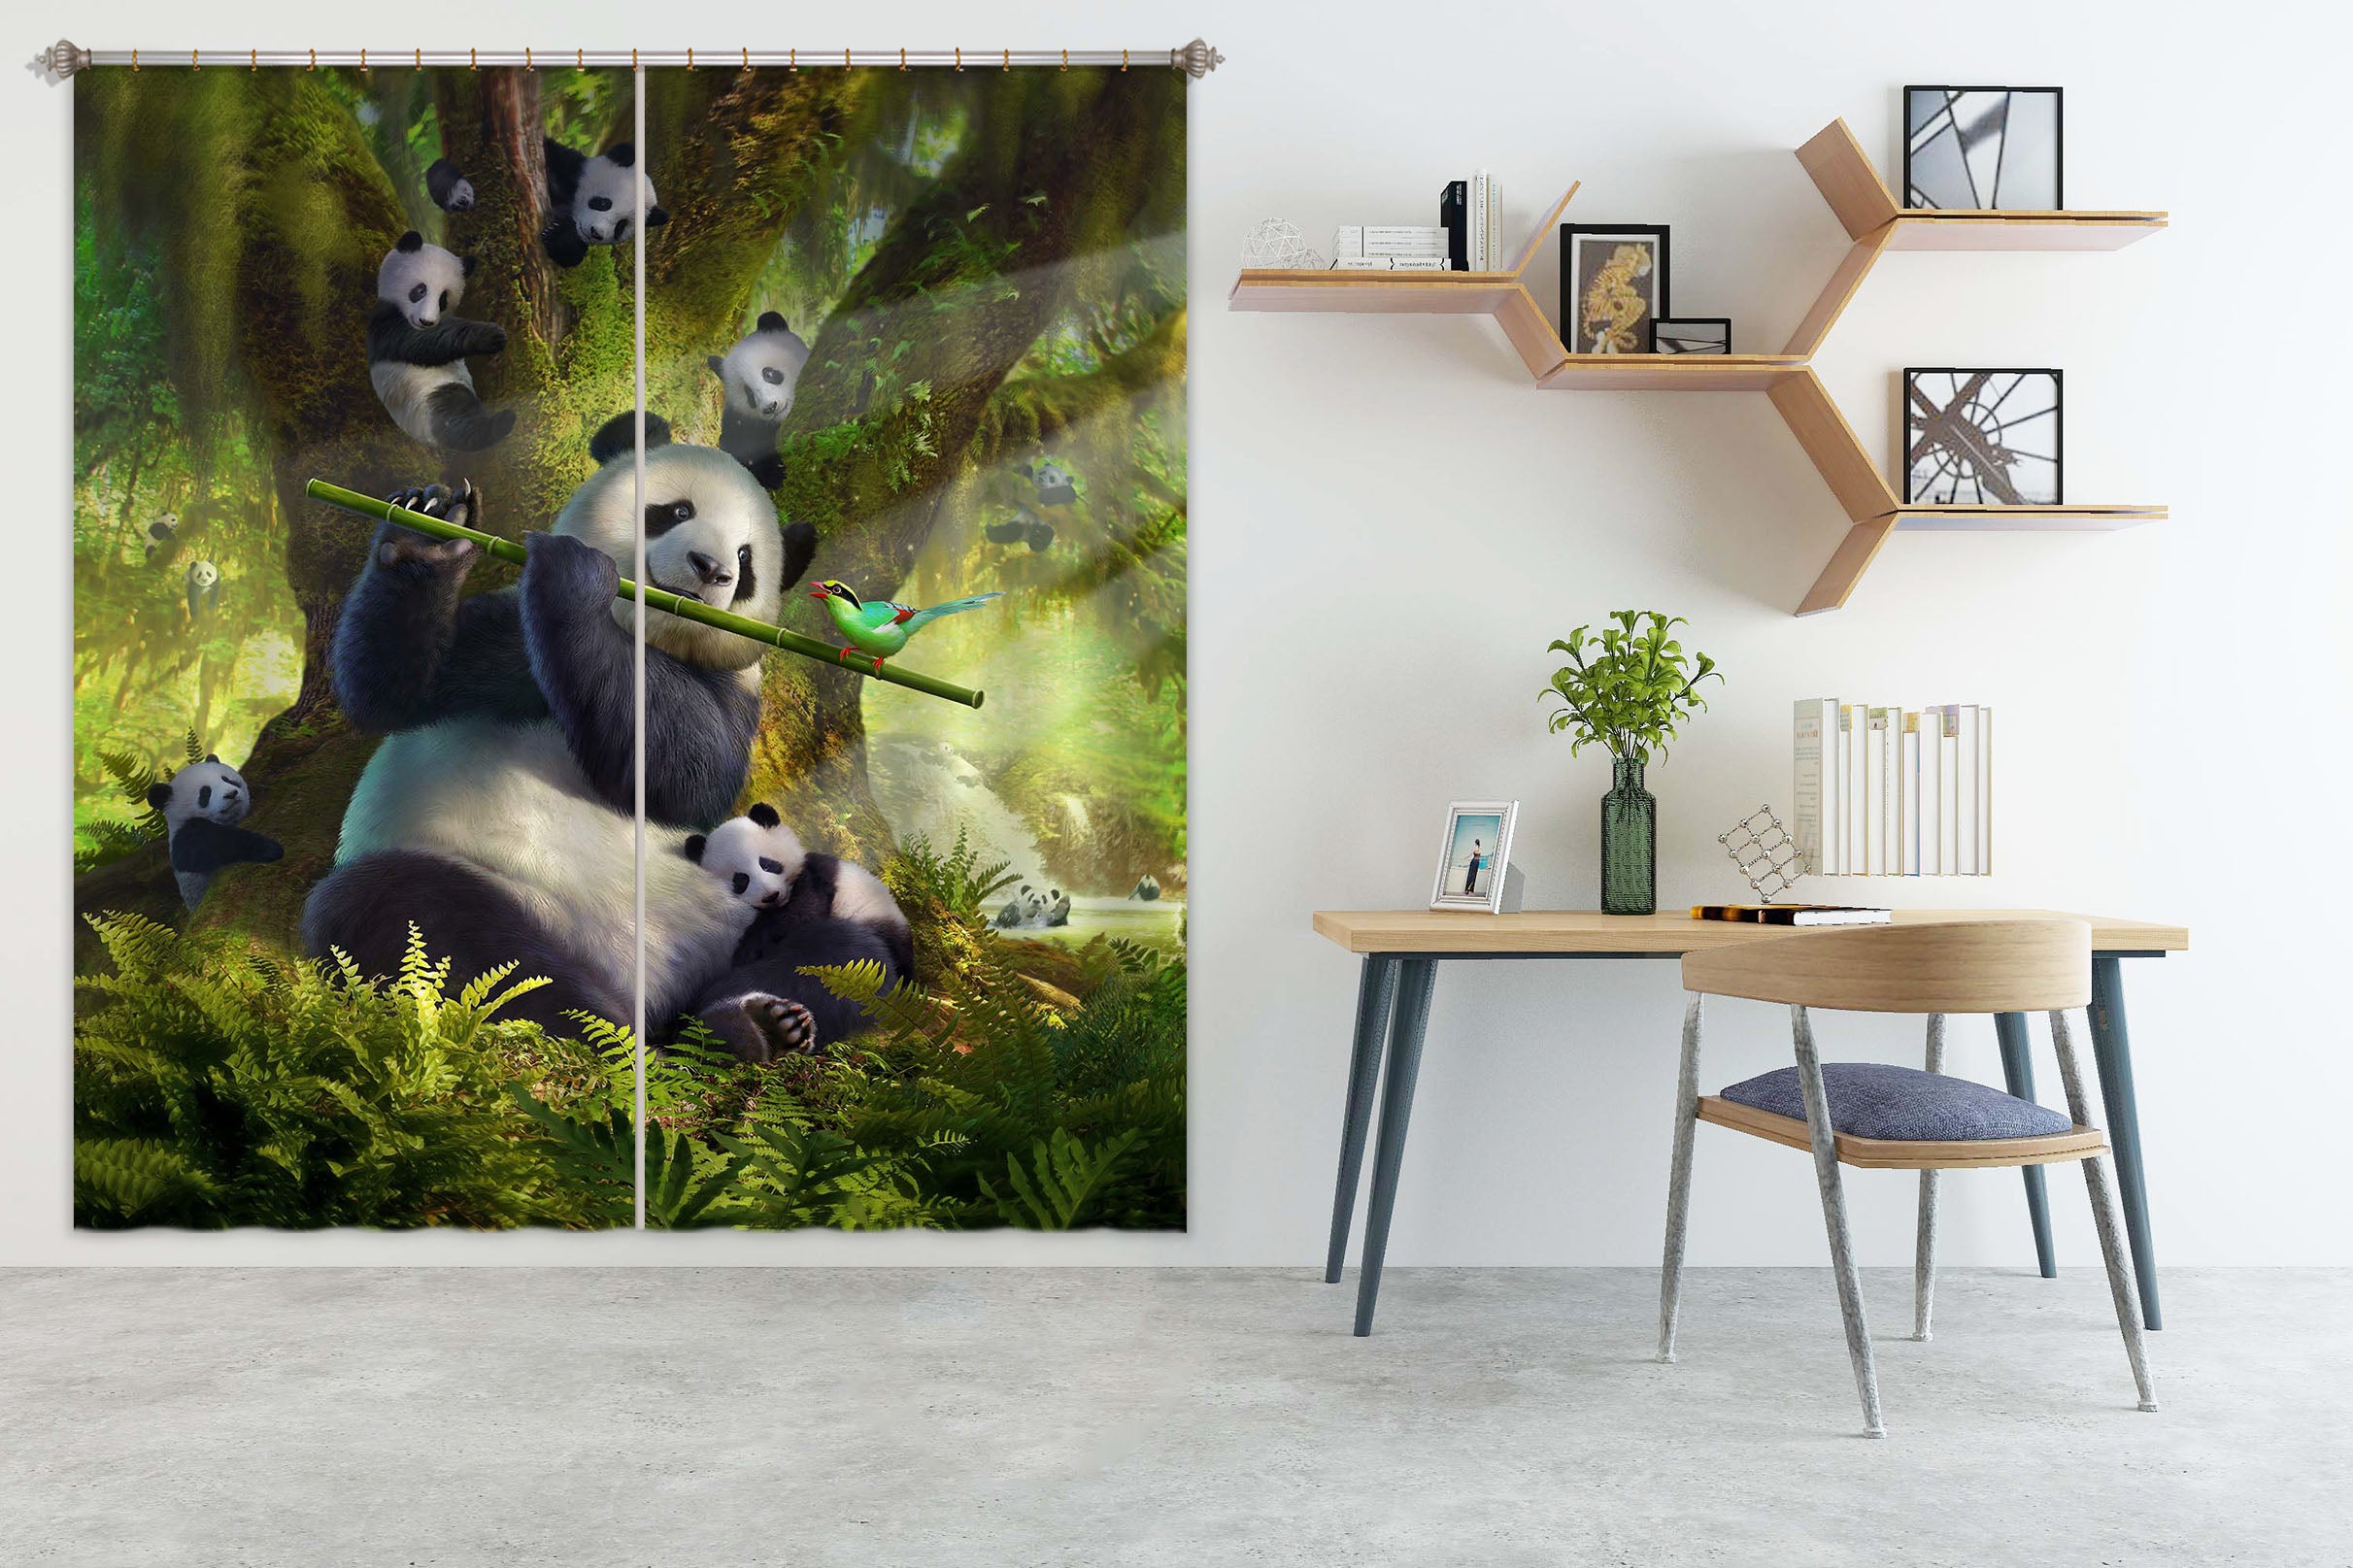 3D Panda Bear 045 Jerry LoFaro Curtain Curtains Drapes